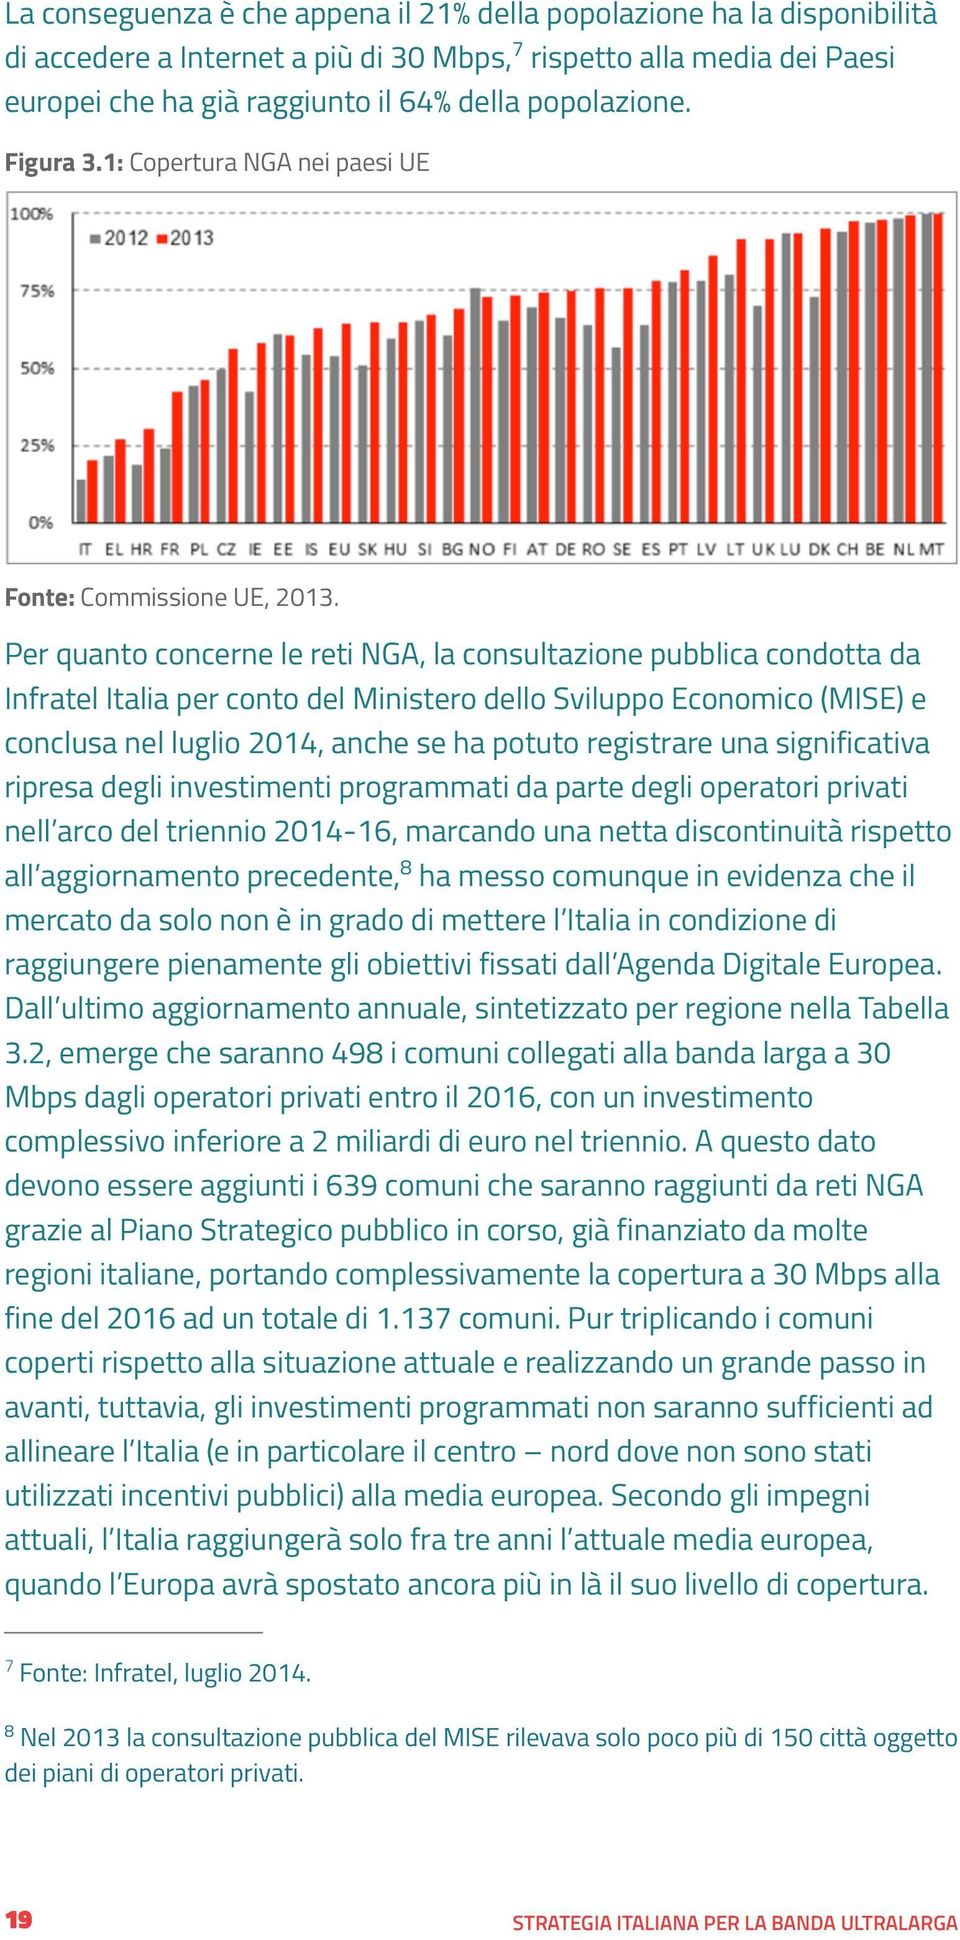 Per quanto concerne le reti NGA, la consultazione pubblica condotta da Infratel Italia per conto del Ministero dello Sviluppo Economico (MISE) e conclusa nel luglio 2014, anche se ha potuto